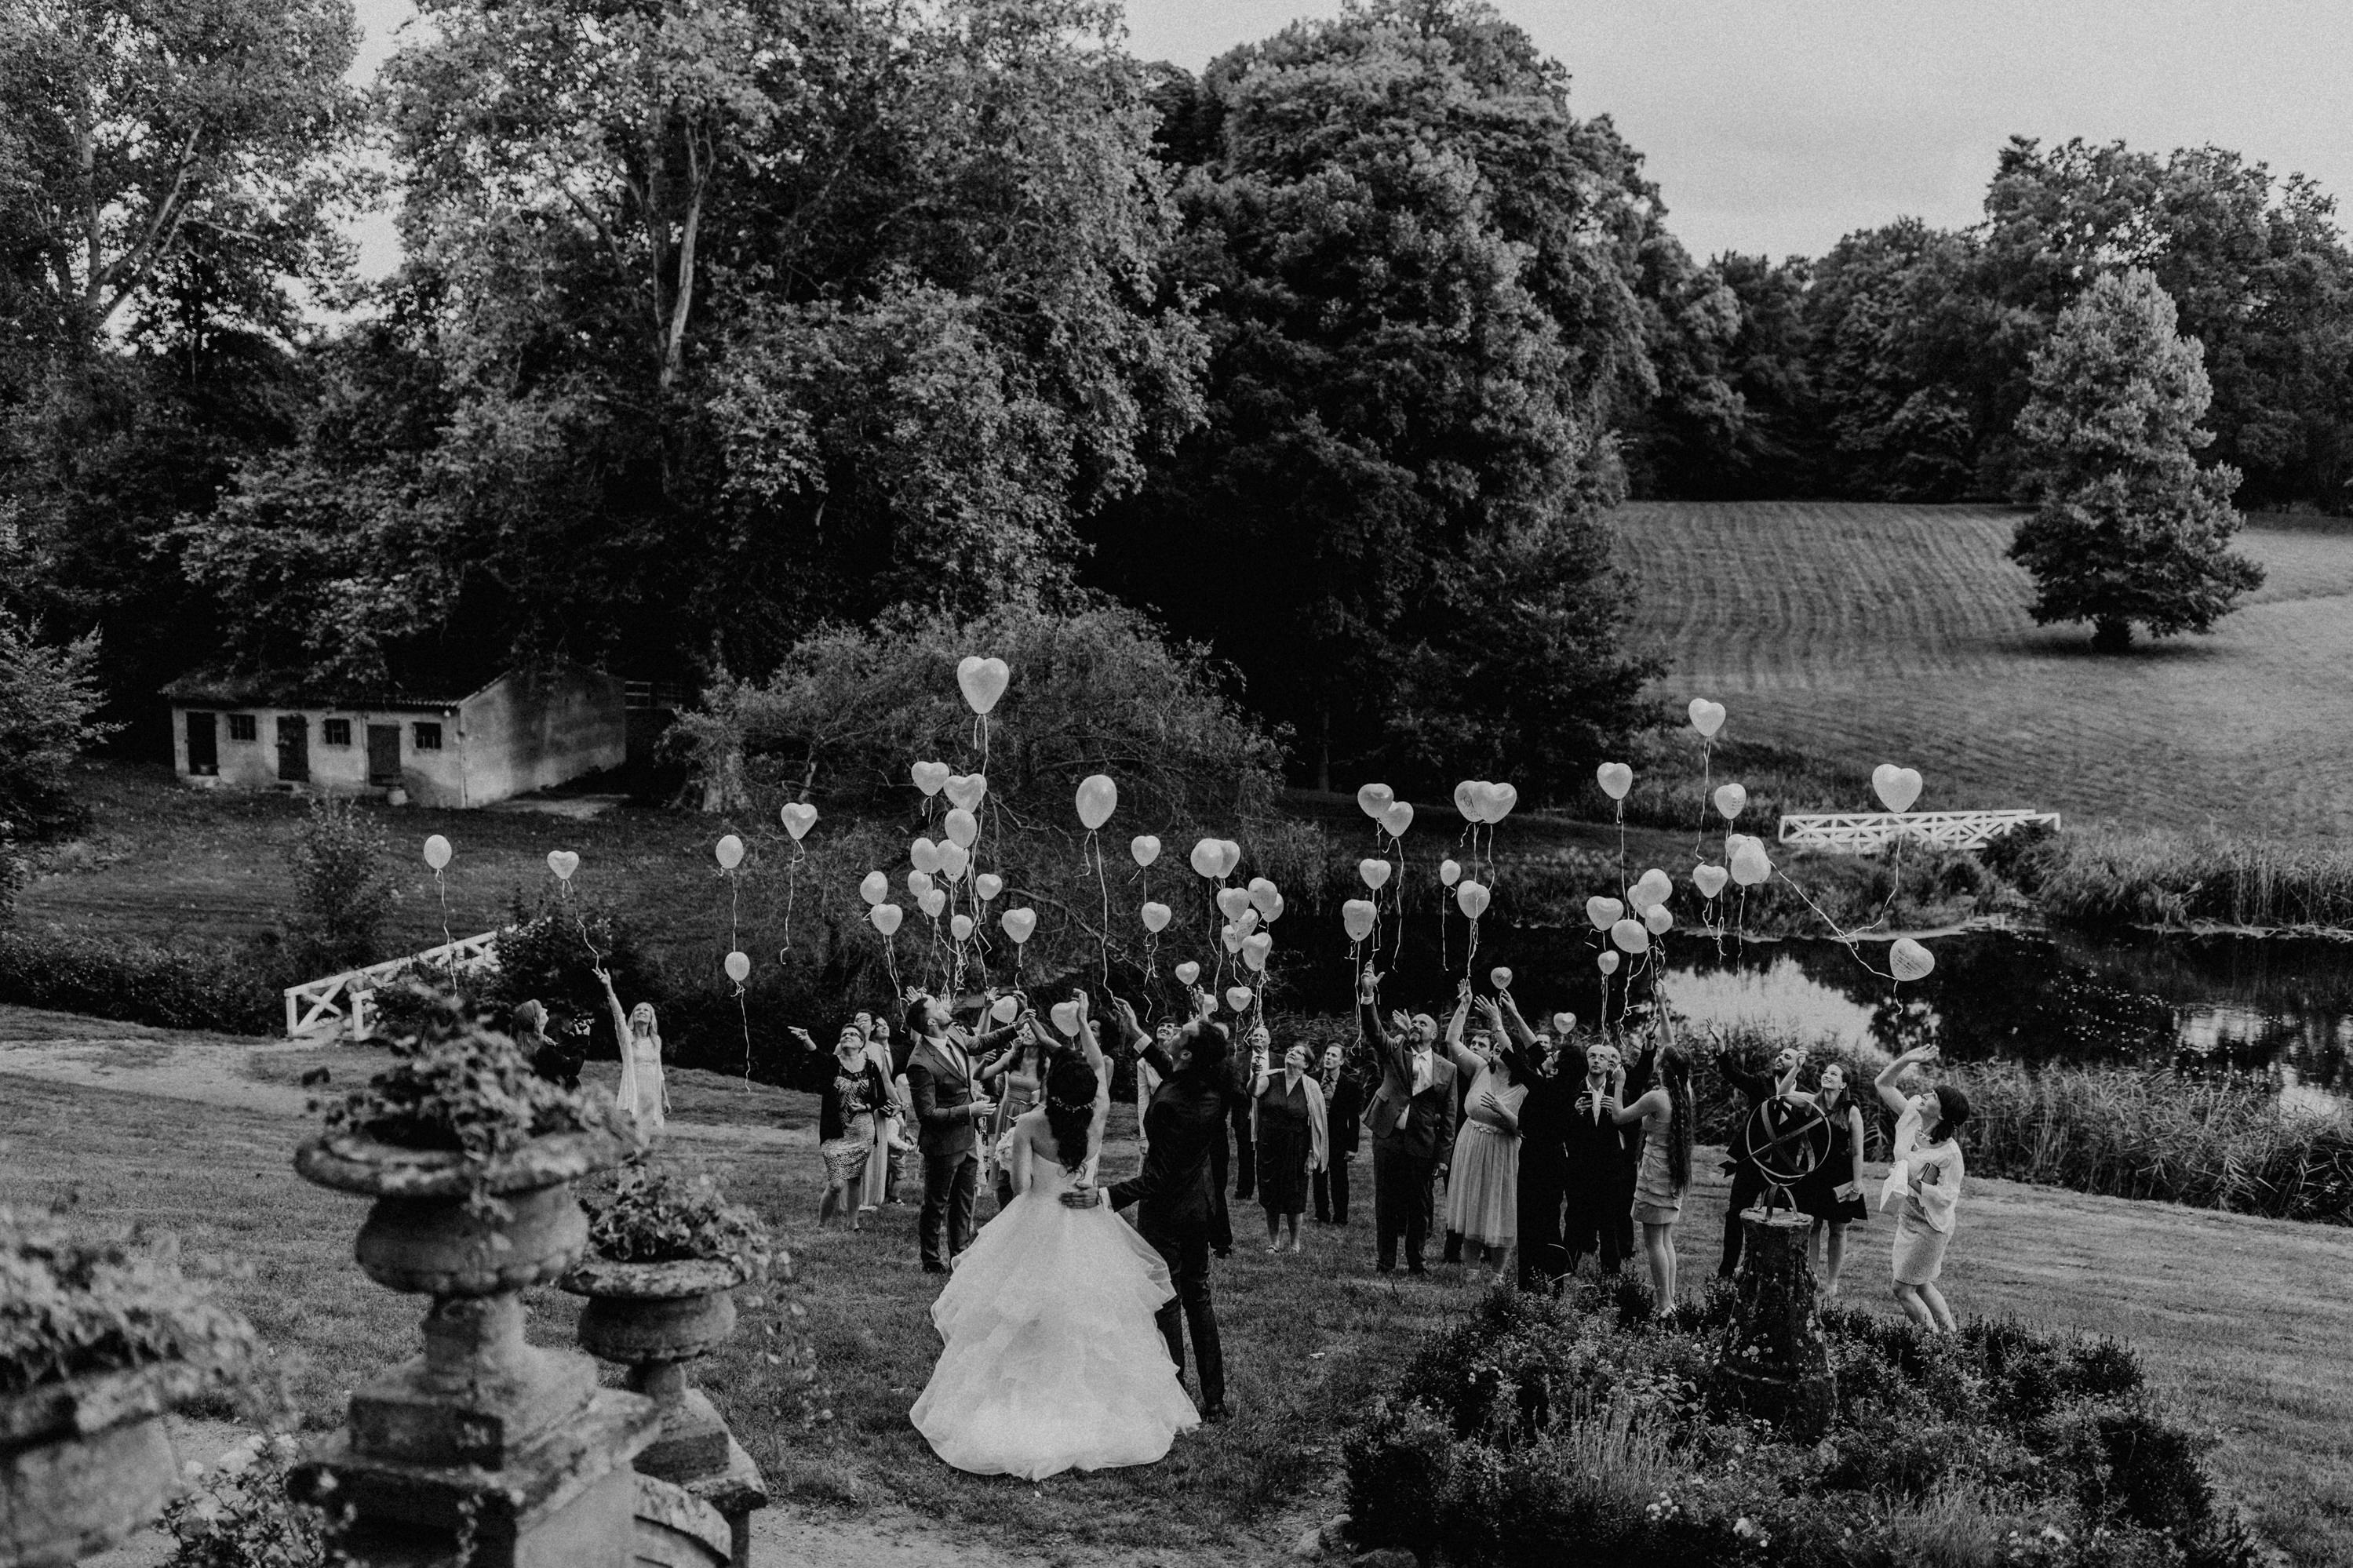 Hochzeitsfoto einer deutsch-russischen Hochzeit auf Schloss Kittendorf. Aufgenommen von den Hochzeitsfotografen Tom und Lia. Fotografen aus Rostock.